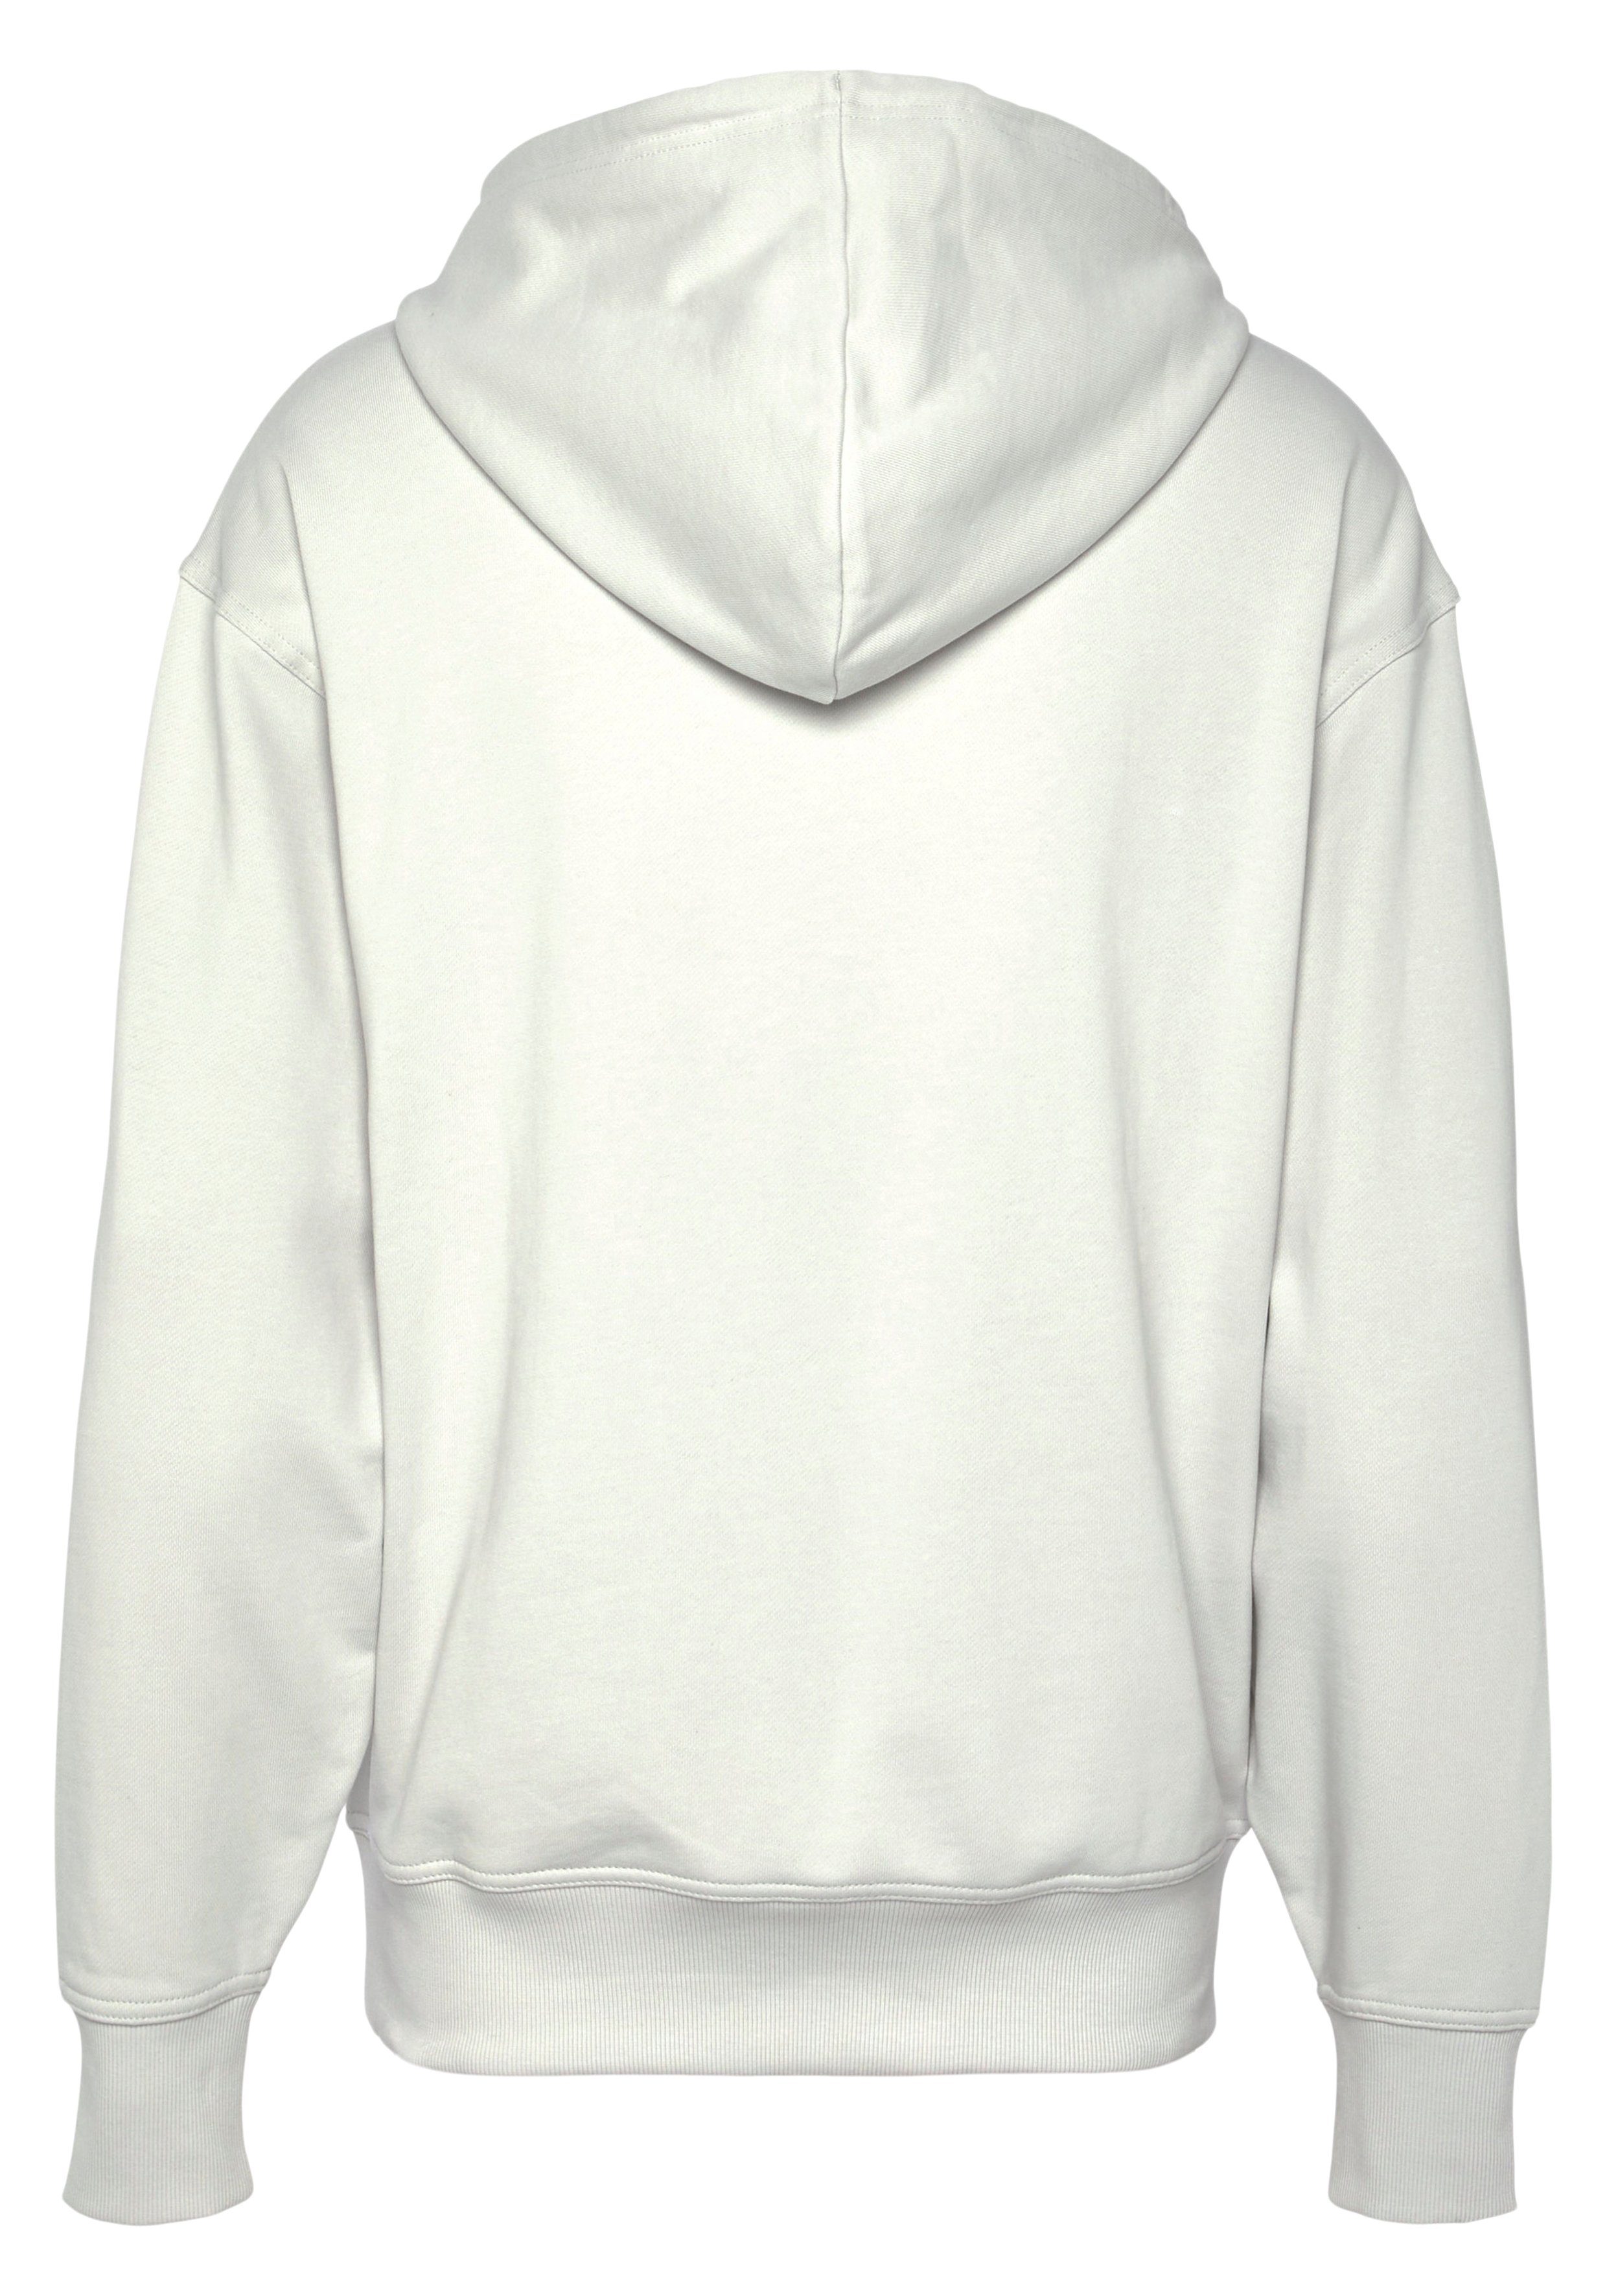 BOSS ORANGE Sweatshirt WebasicHood mit großem Grey Print auf der BOSS Brust Light/Pastel